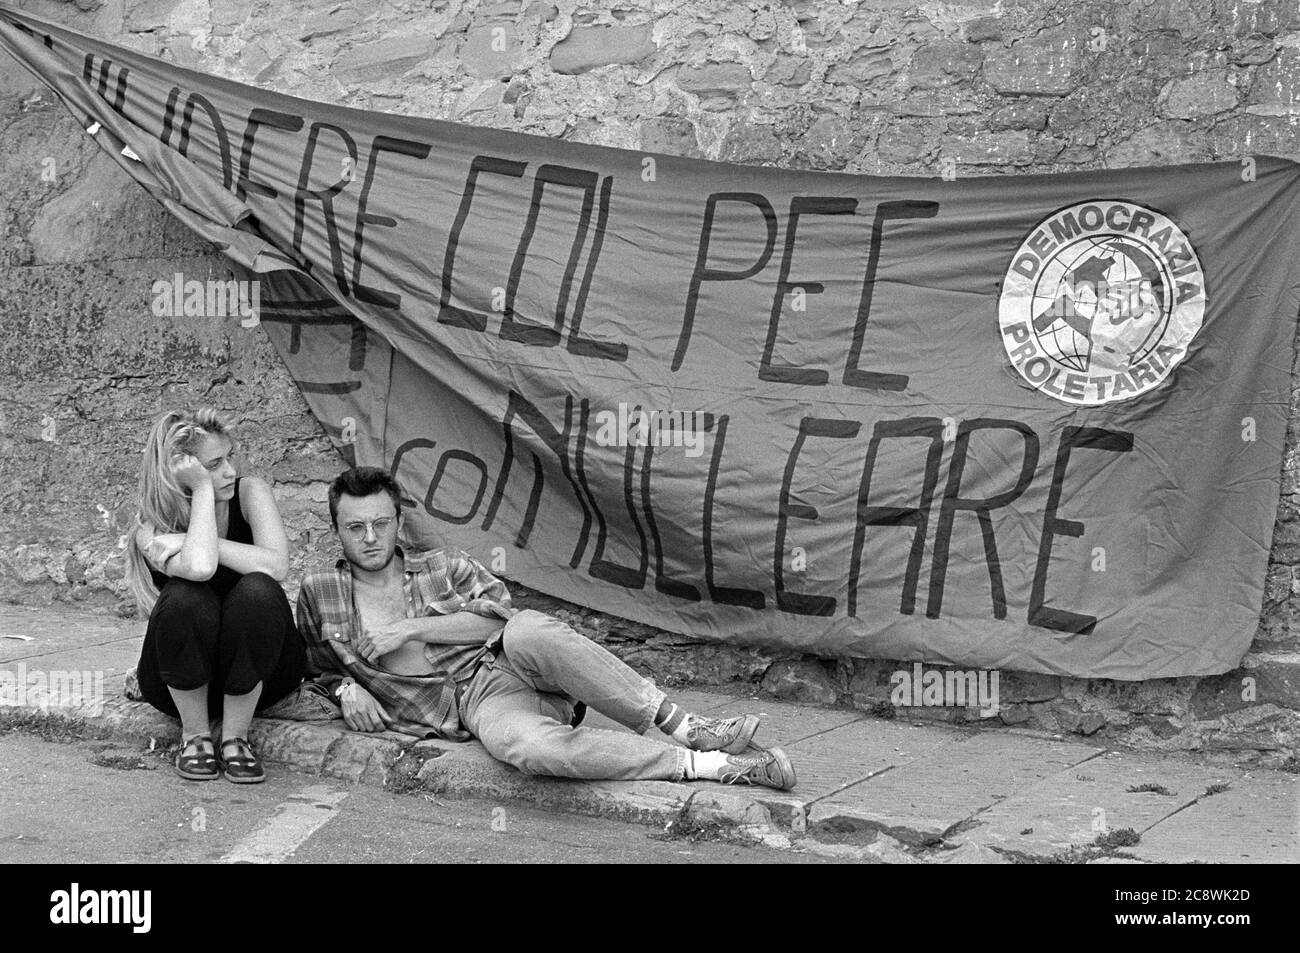 - Manifestazione contro la centrale nucleare sperimentale PEC dell'ENEA sul lago Brasimone (Bologna, giugno 1987)   - Dmonstration against ENEA's PEC experimental nuclear power plant on lake Brasimone (Bologna, June 1987) Stock Photo